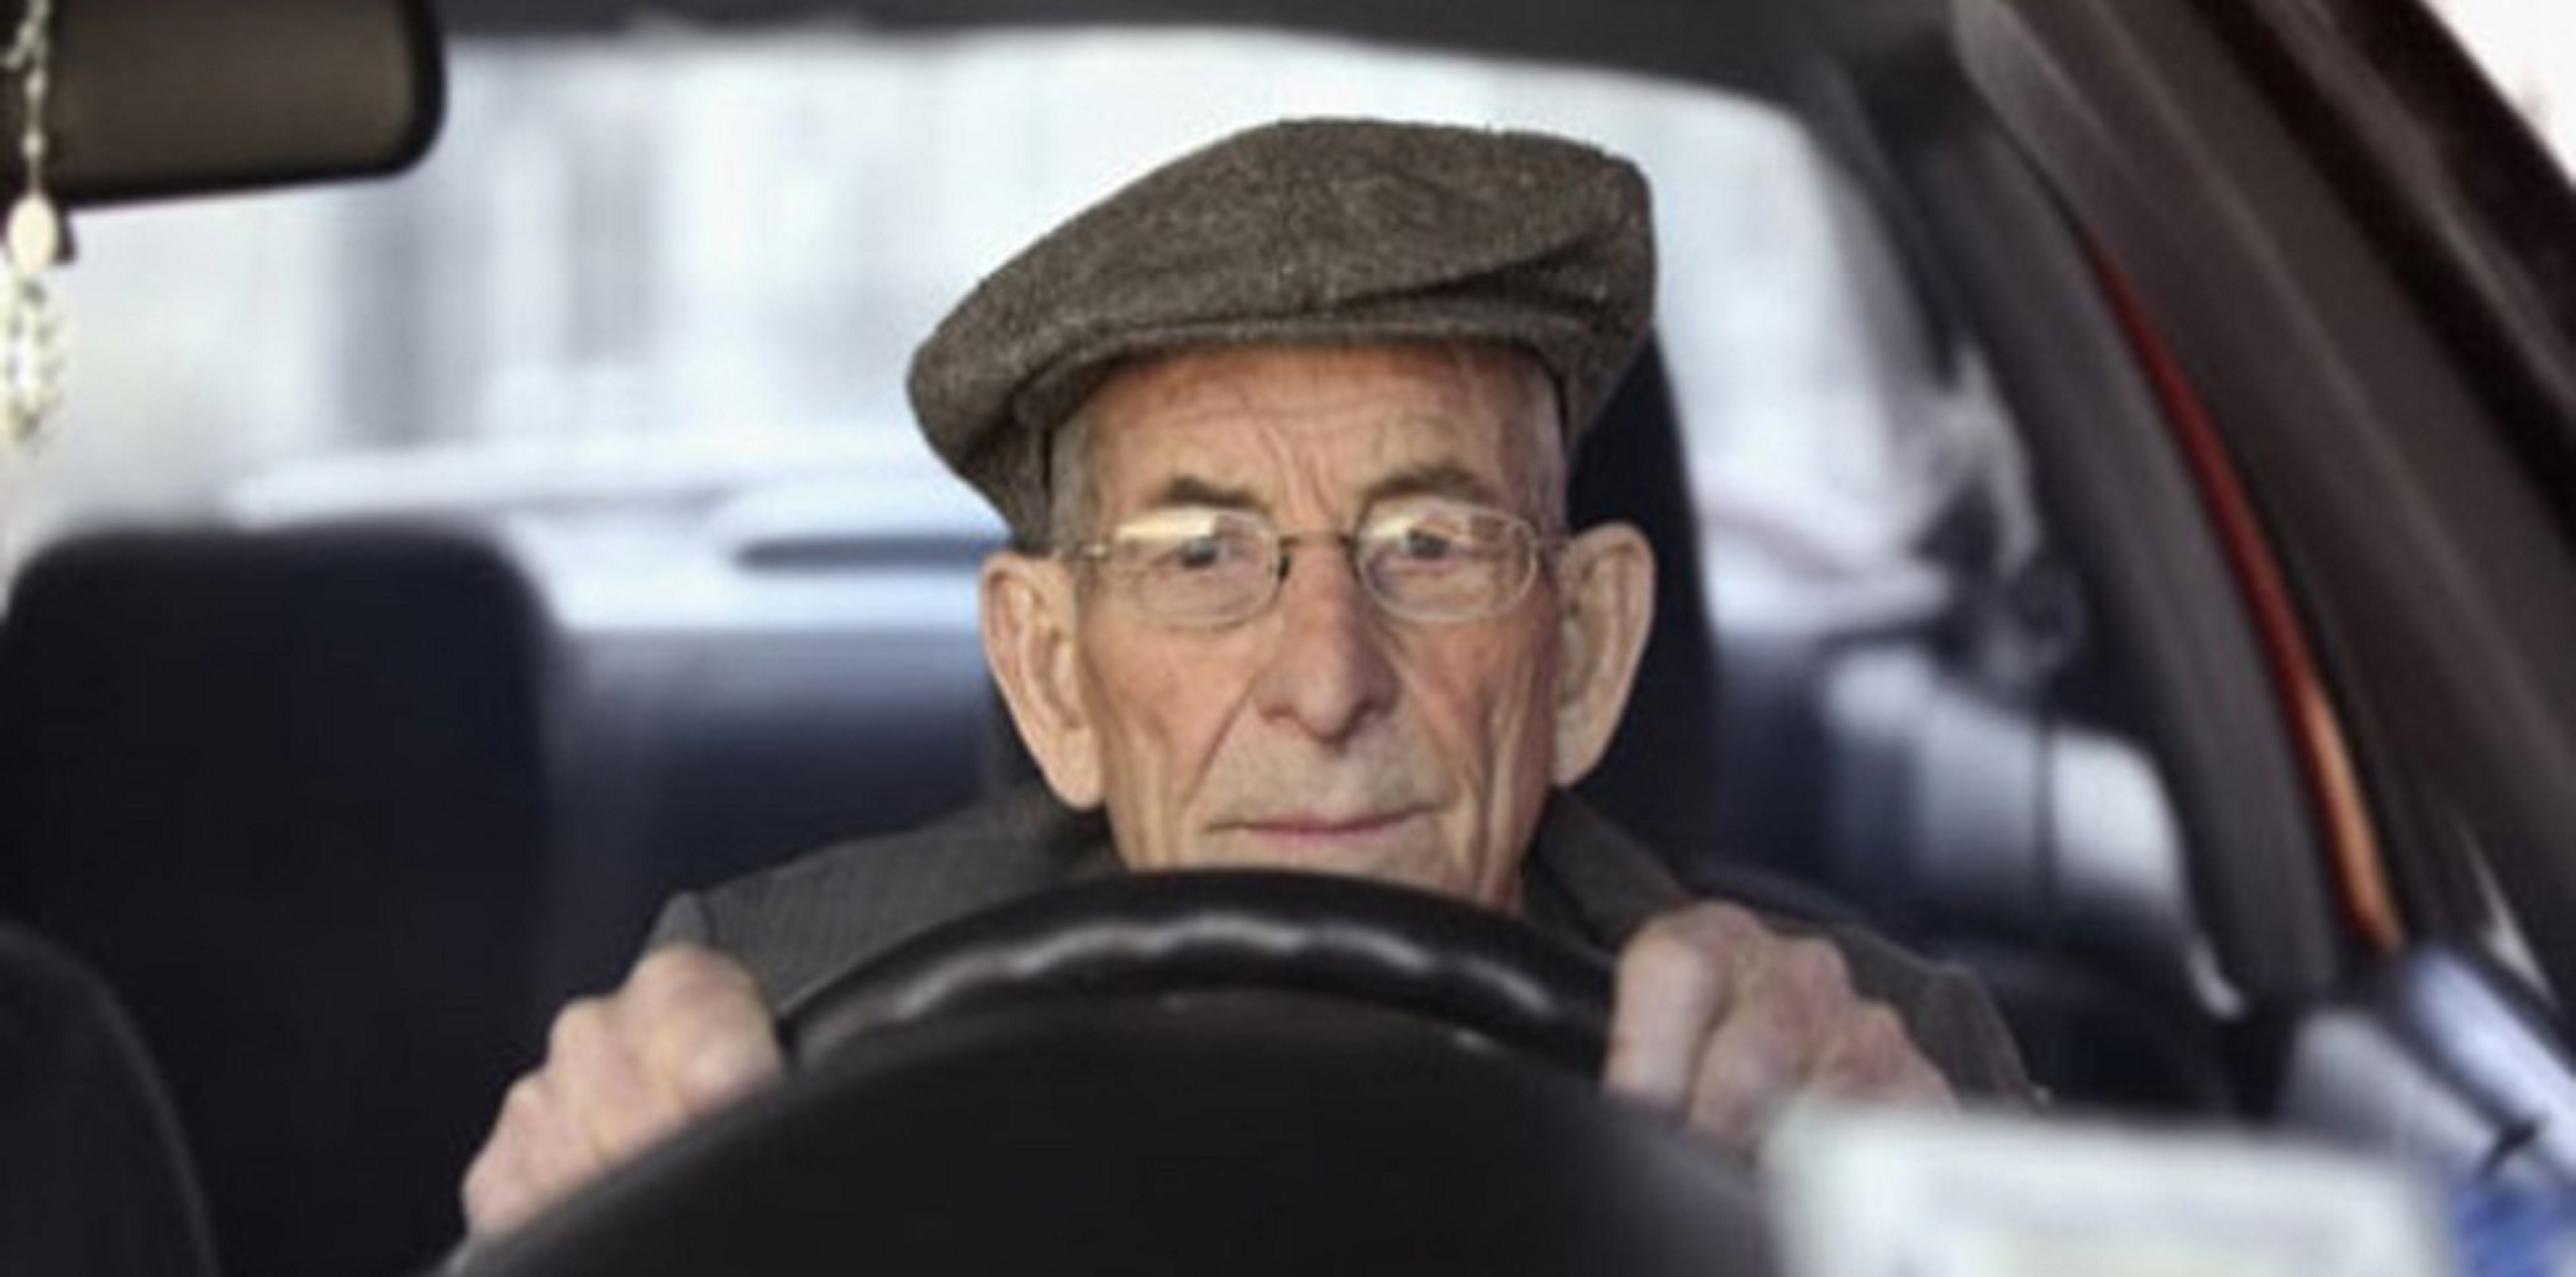 anziani al volante11